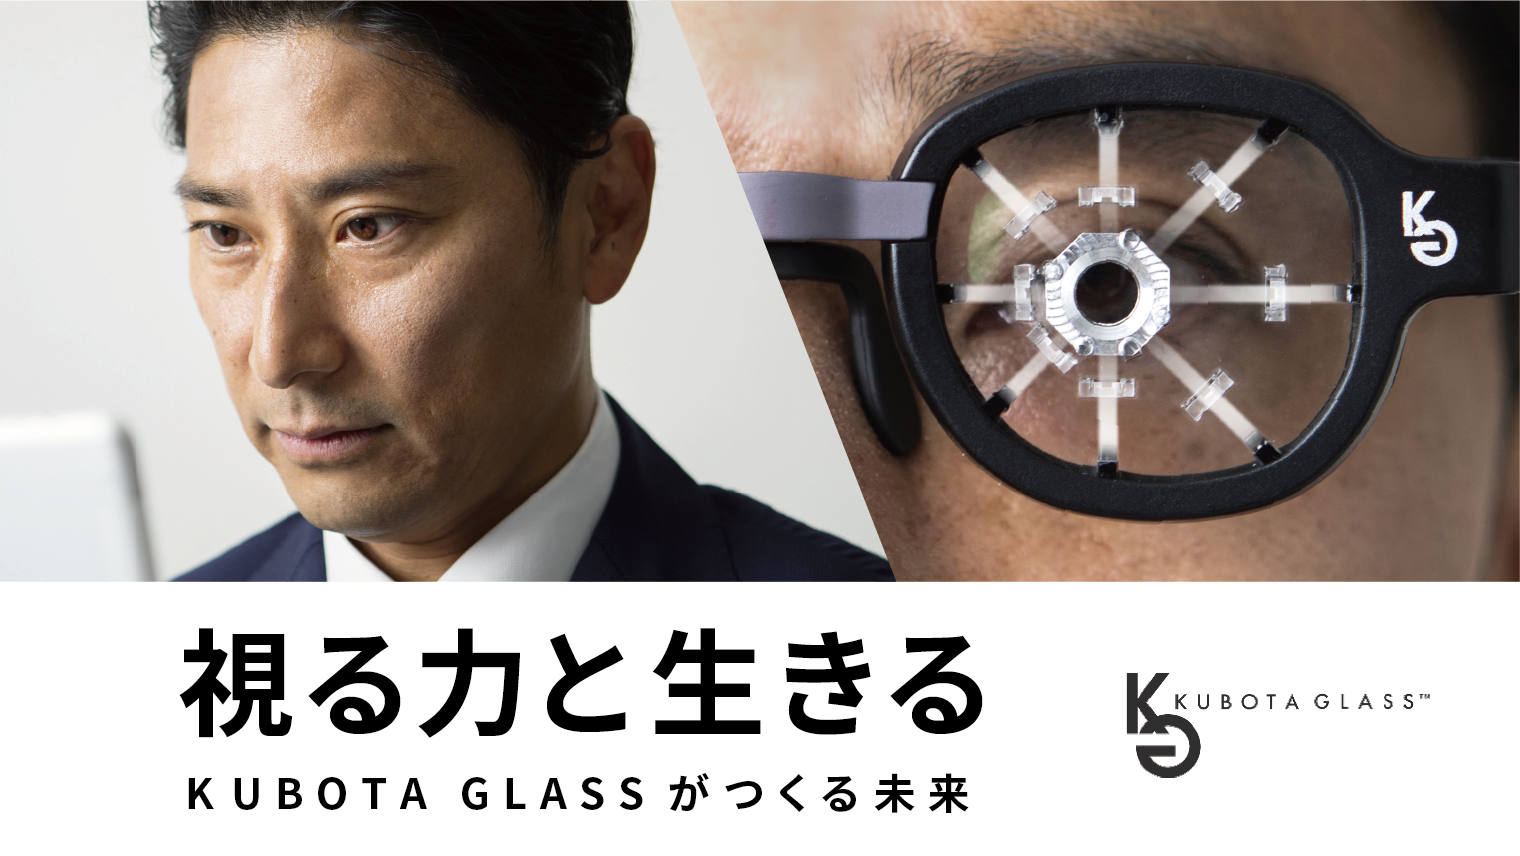 Sony Startup Acceleration Programの公式サイトで、野外環境を再現したメガネ型ARデバイス「Kubota Glass®」の法人モニターを募集